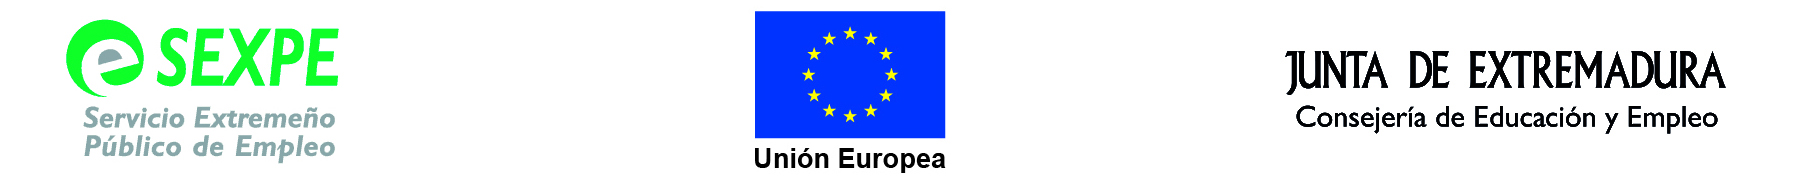 LOGO SEXPE - UNION EUROPEA - JUNTA DE EXTREMADURA CONSEJERIA DE EDUCACION Y EMPLEO